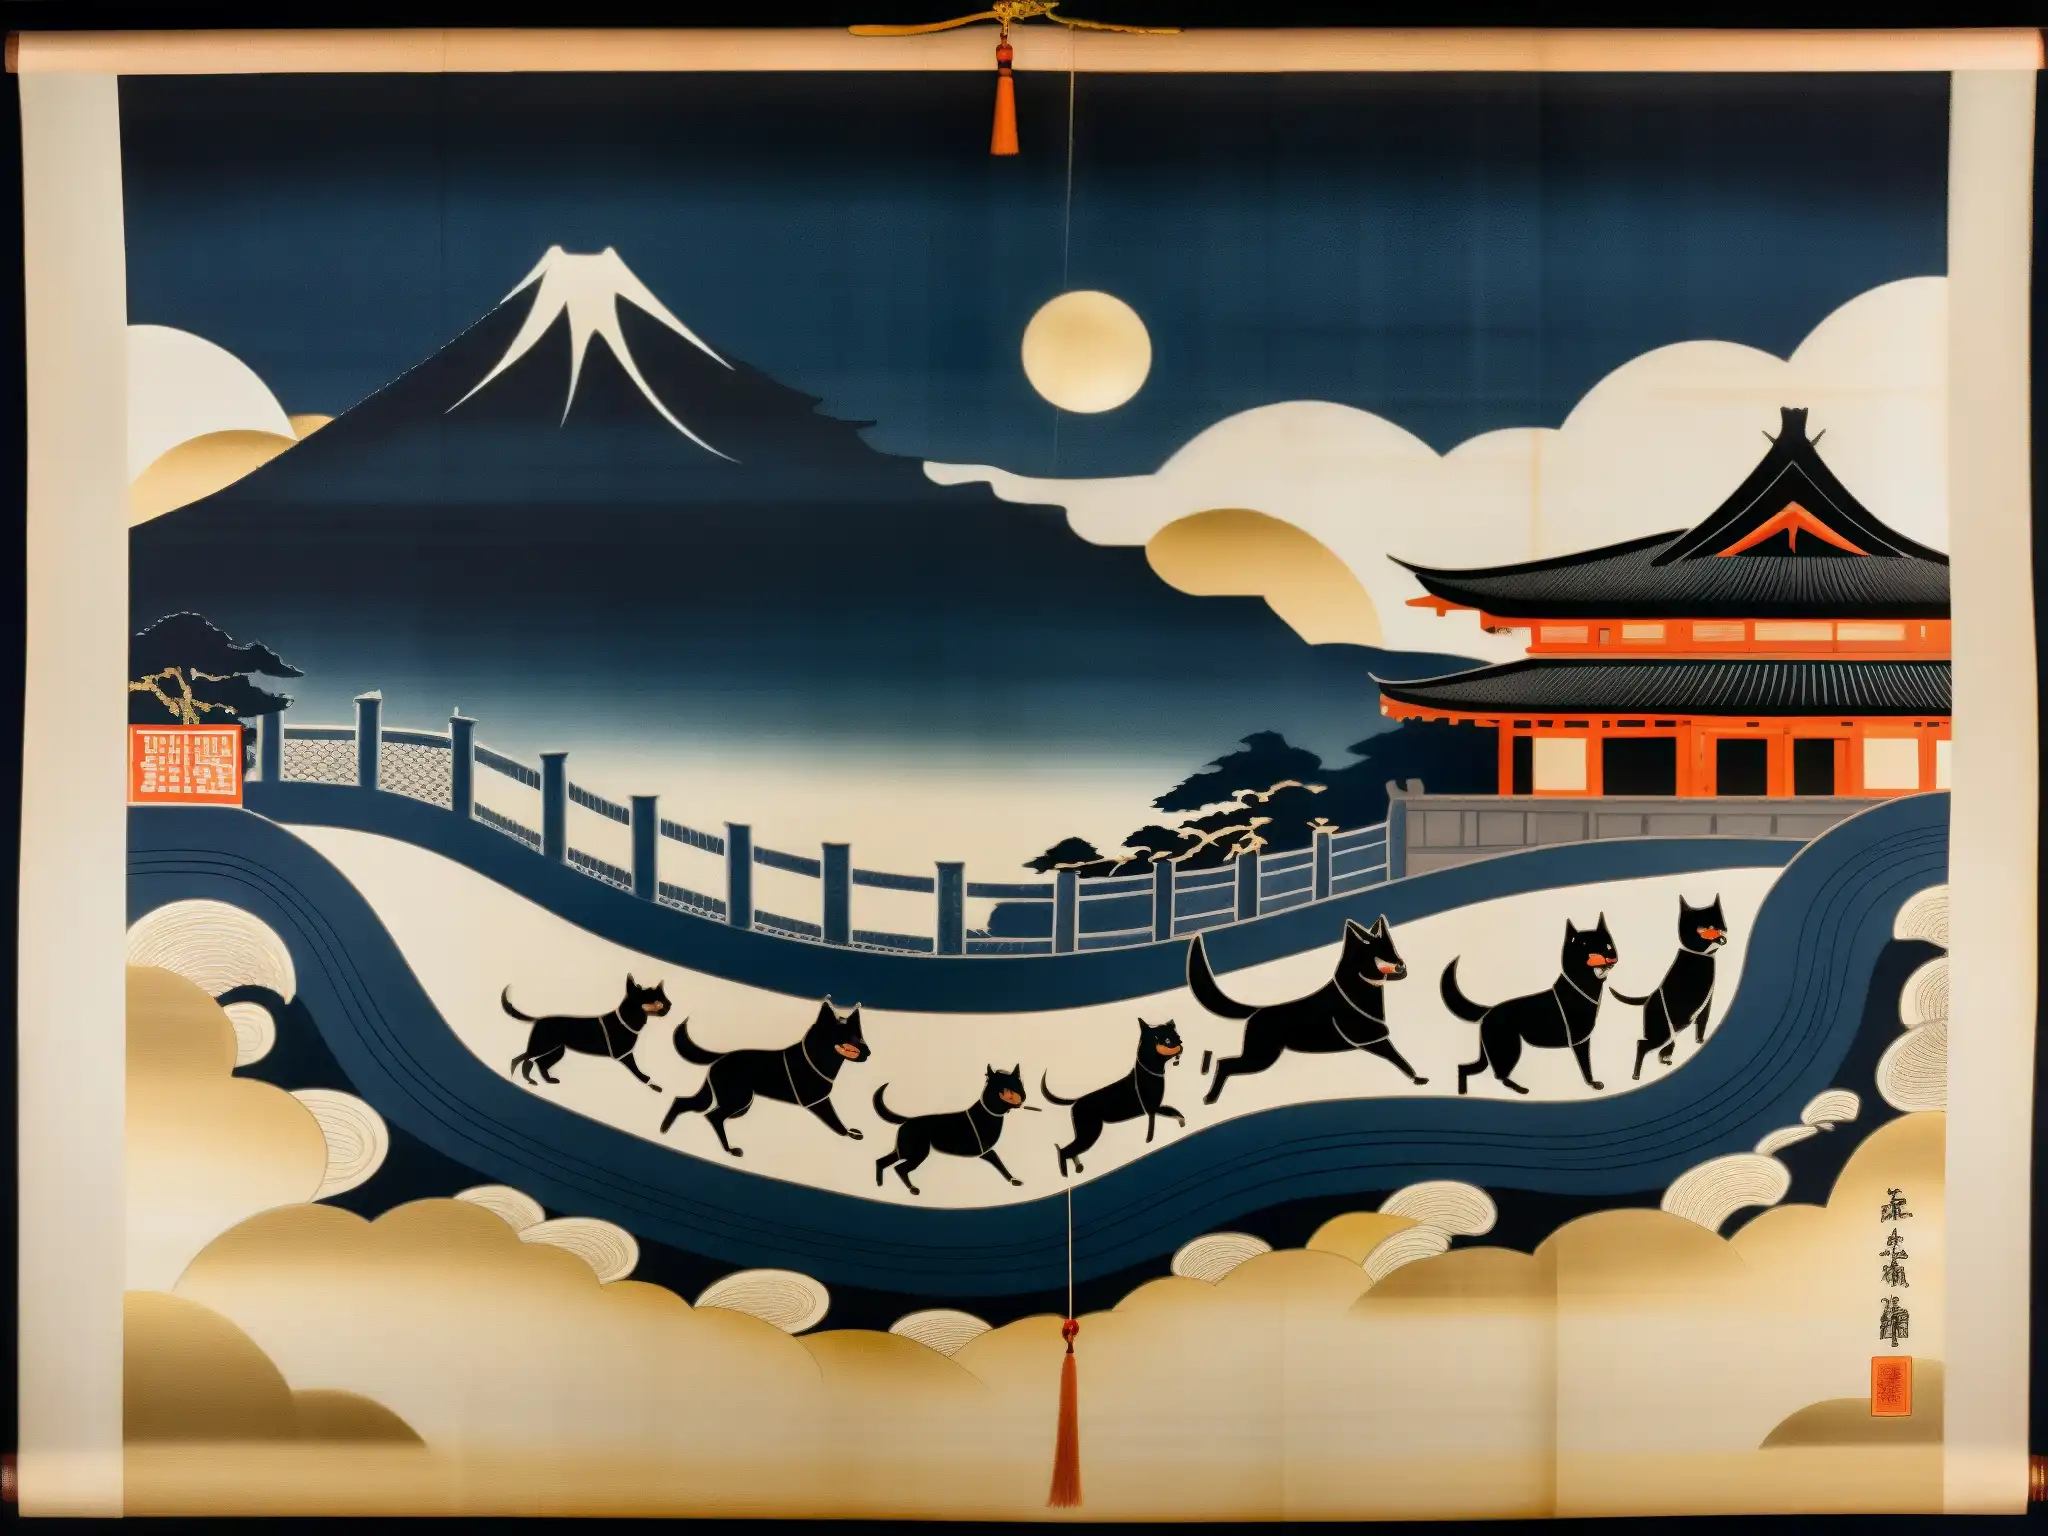 Un antiguo pergamino muestra a los espíritus Inugami, con rasgos caninos y ojos fieros, flotando sobre un pueblo japonés de noche